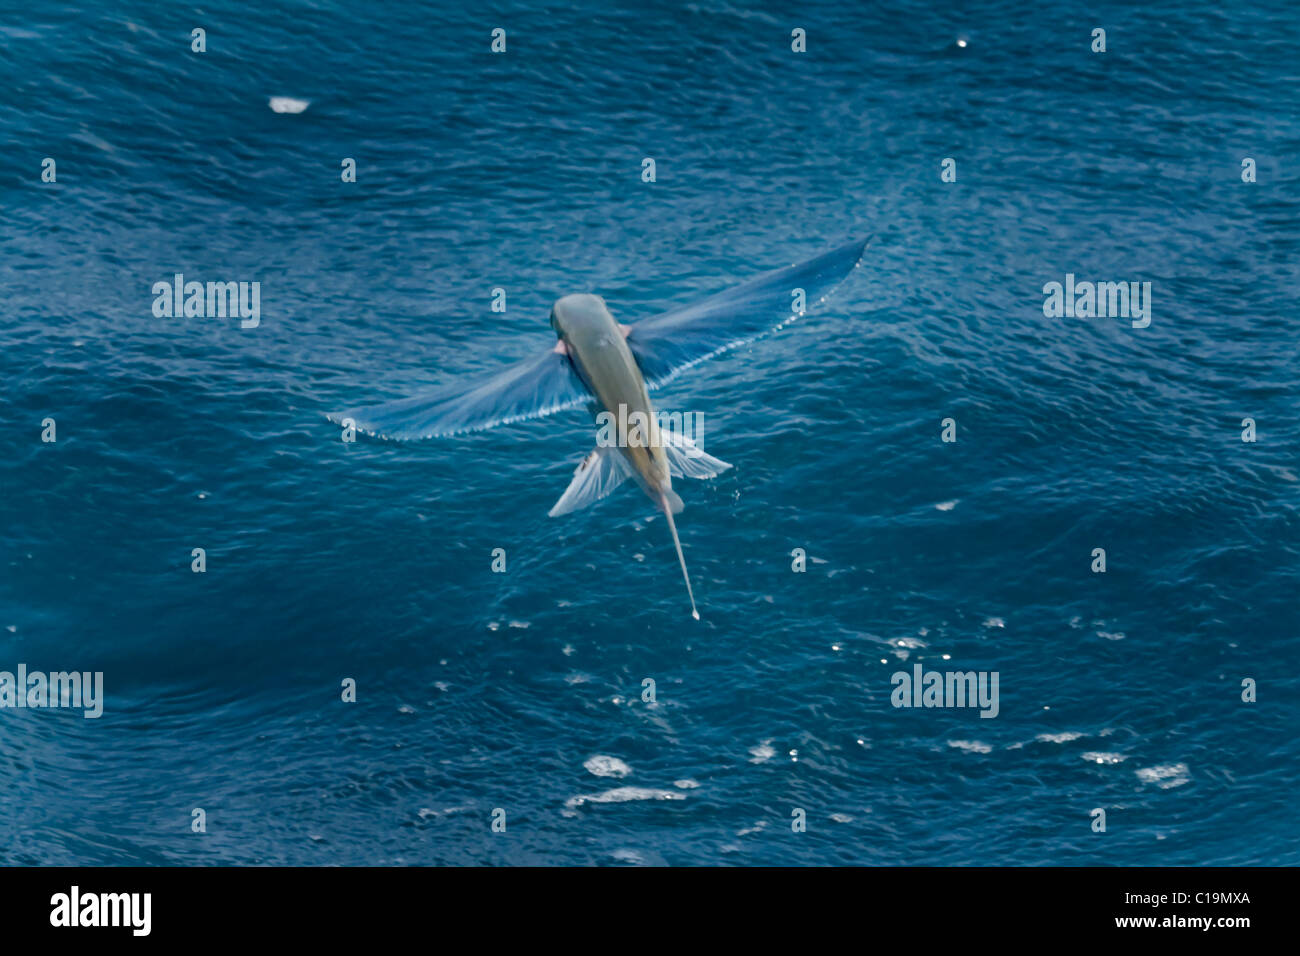 Fliegende Fische-Arten in der Luft, wissenschaftliche name unbekannt, Malediven, Indischer Ozean. Stockfoto